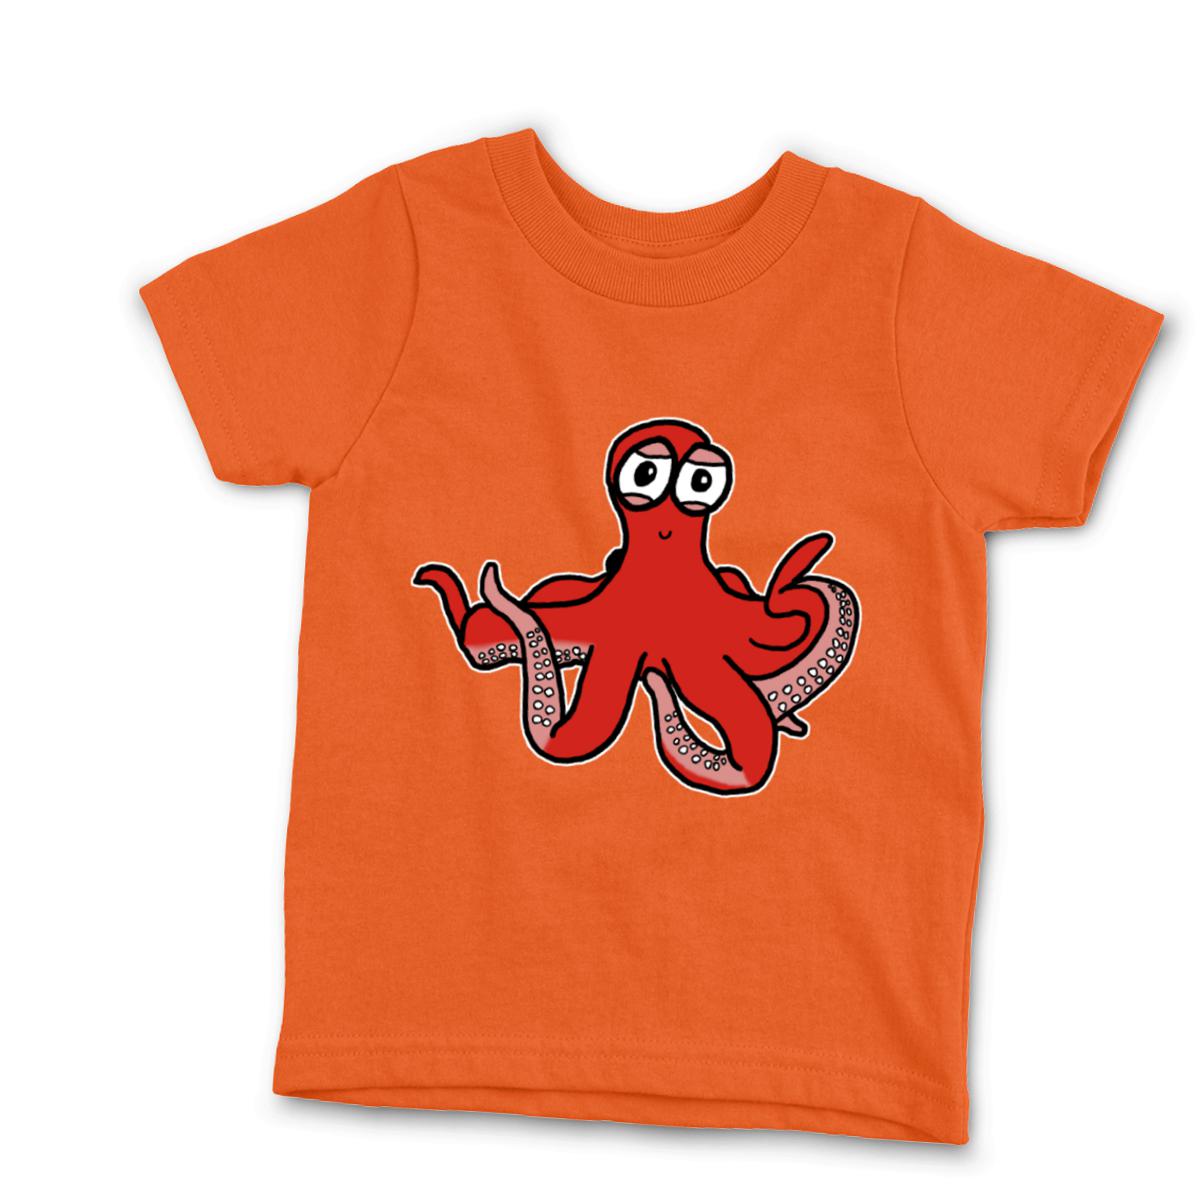 Octopus Kid's Tee Small orange